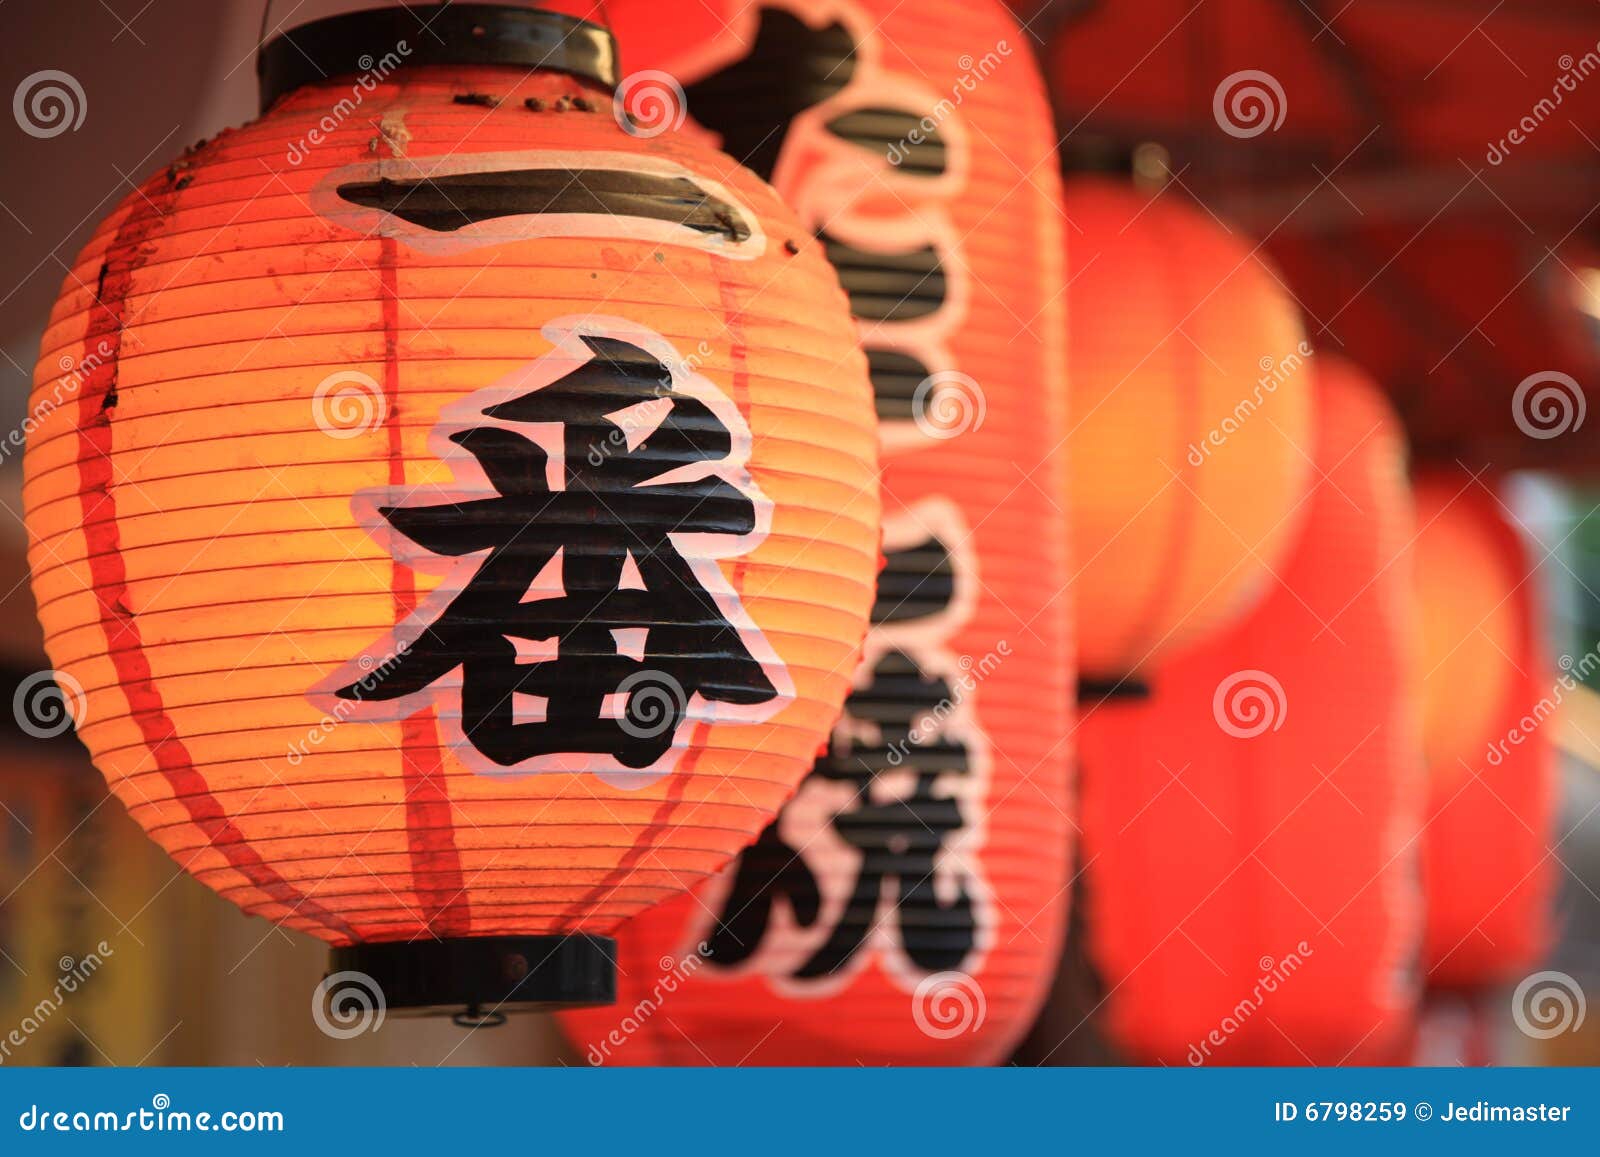 Lanterne Japonaise De Kyoto Image stock - Image du japonais, asie: 6798259